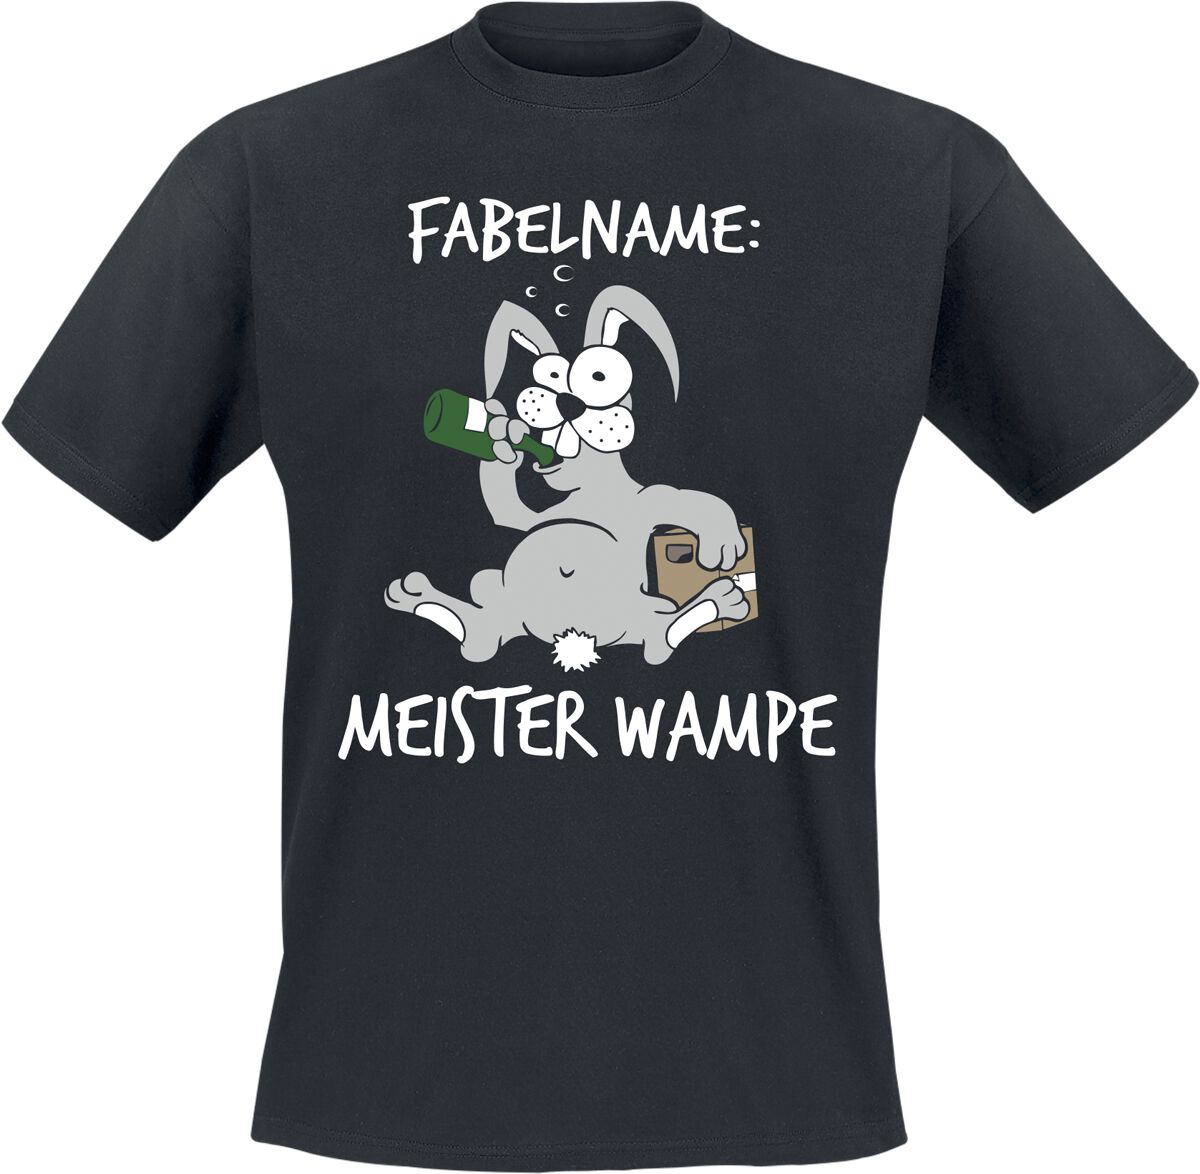 Tierisch T-Shirt - Fabelname: Meister Wampe - M bis XL - für Männer - Größe L - schwarz